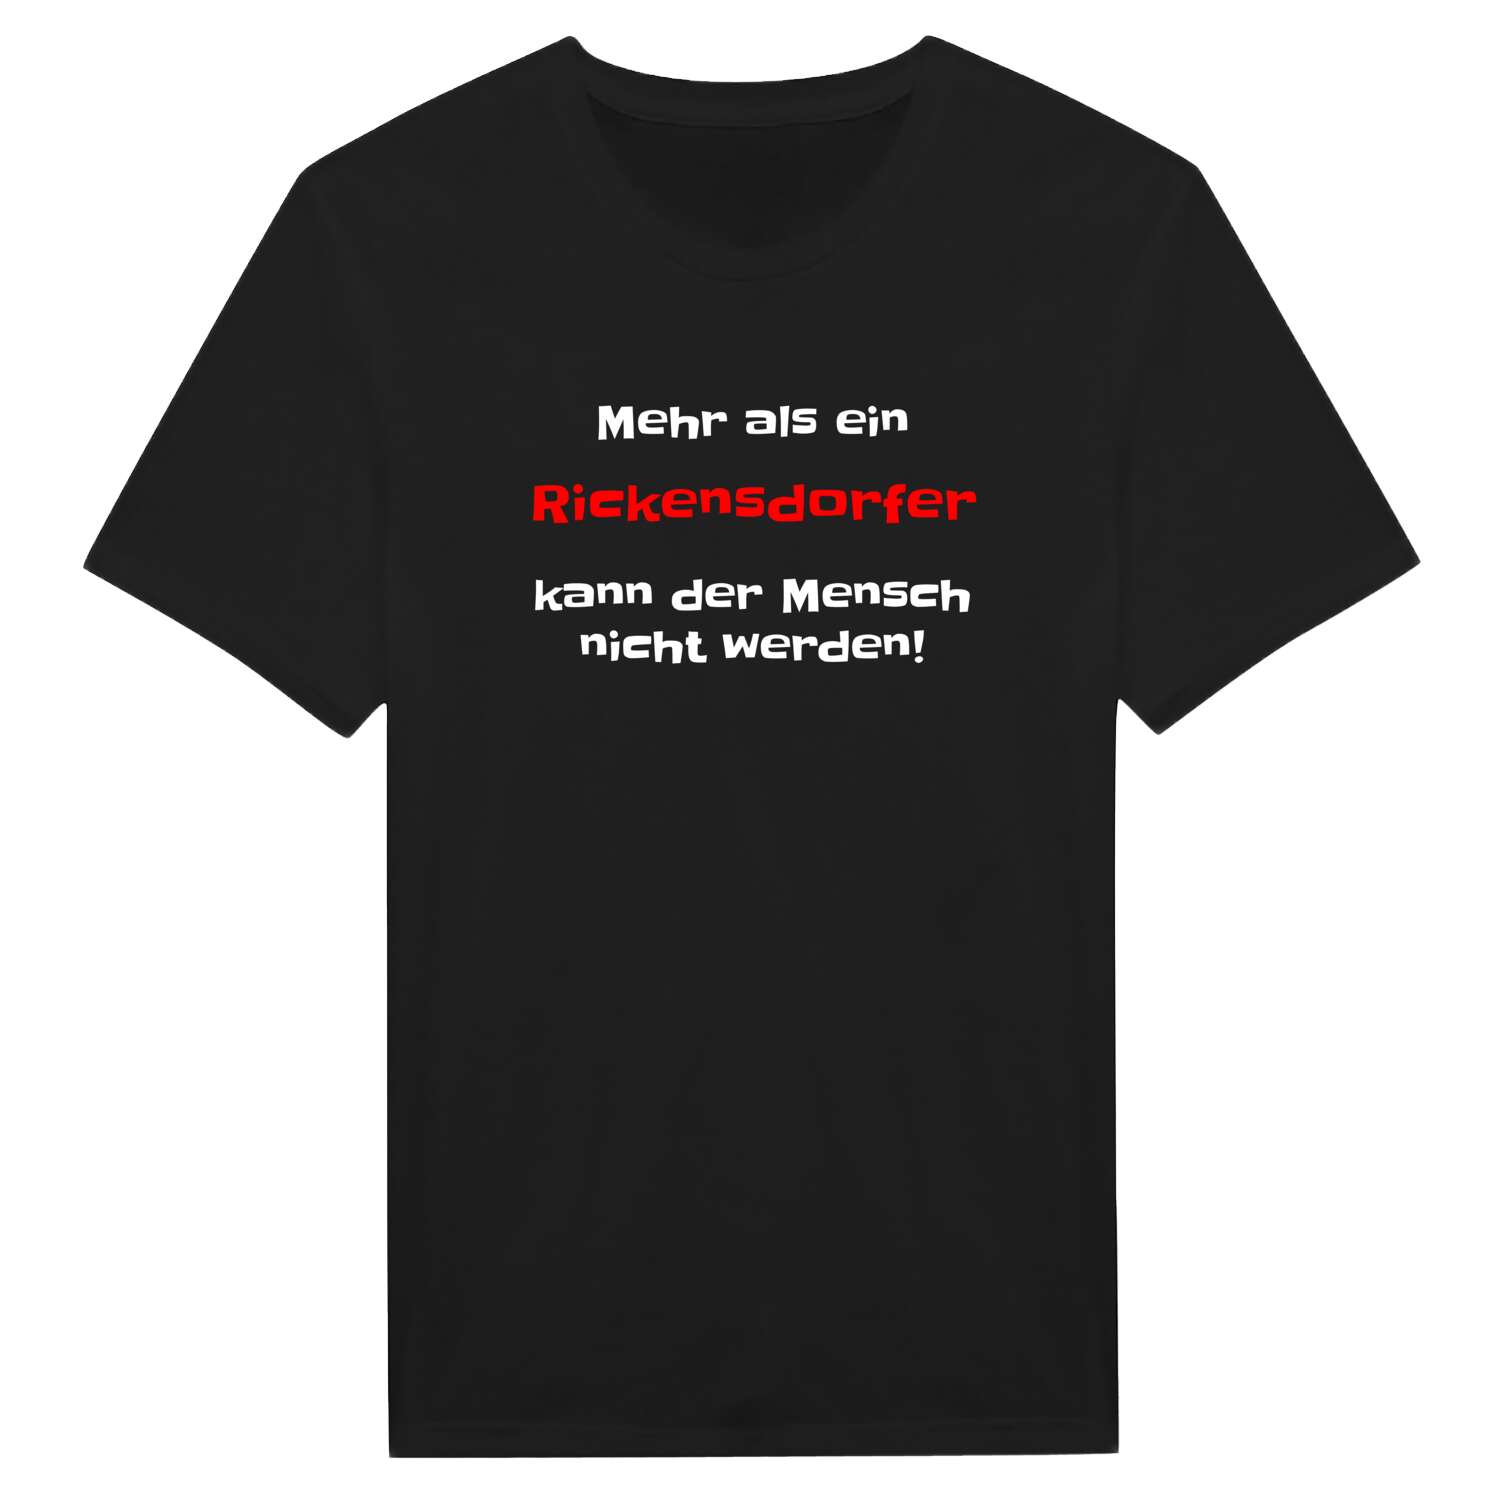 Rickensdorf T-Shirt »Mehr als ein«